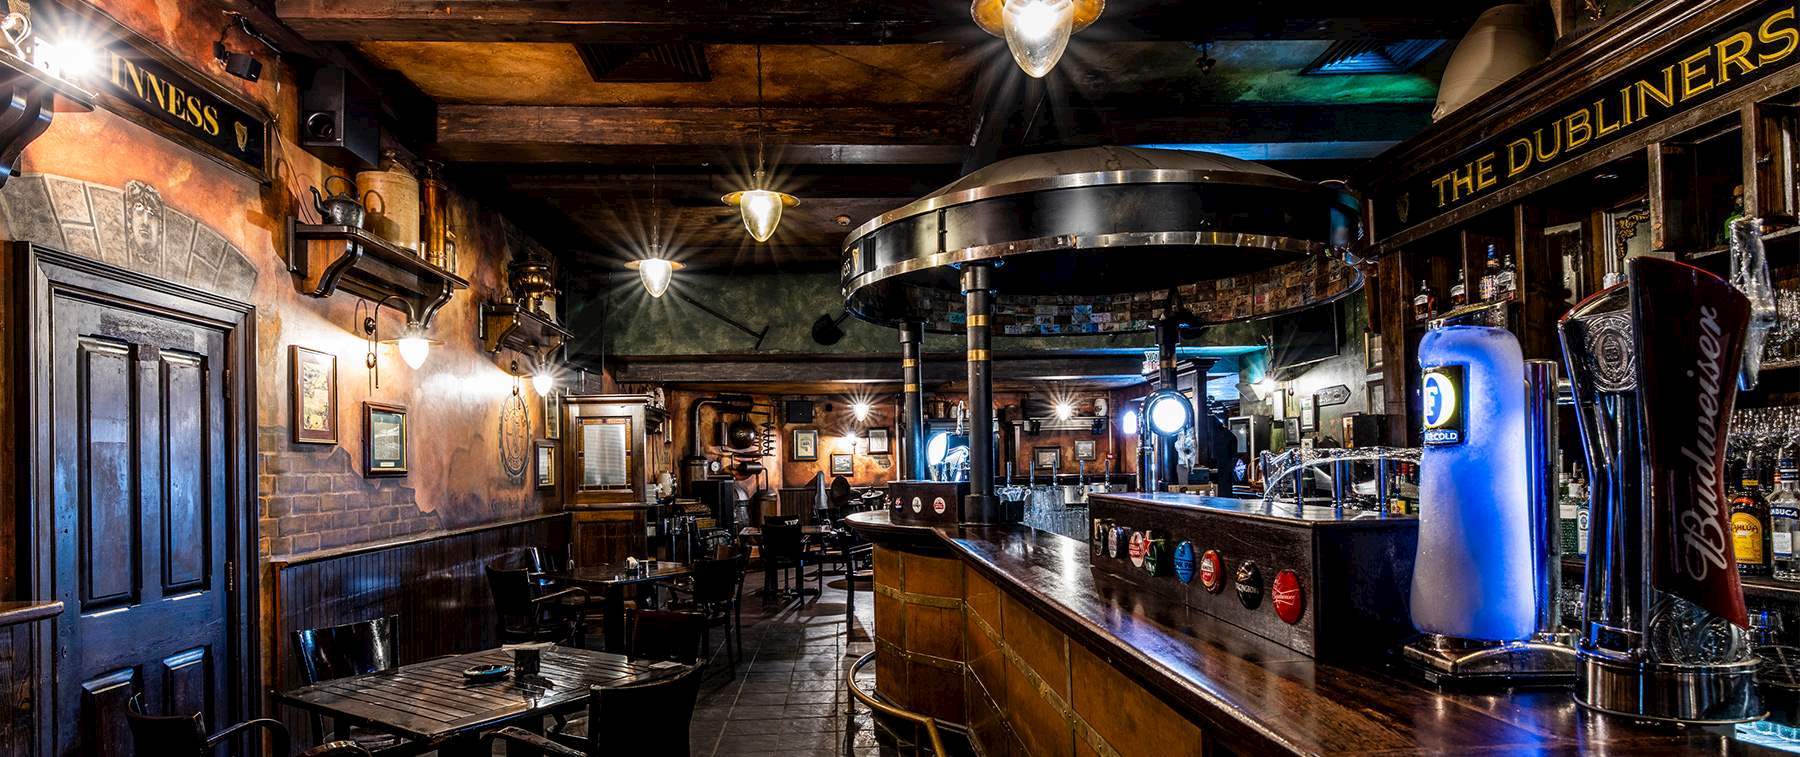 The Dubliner's - Irish Pub In Dubai 